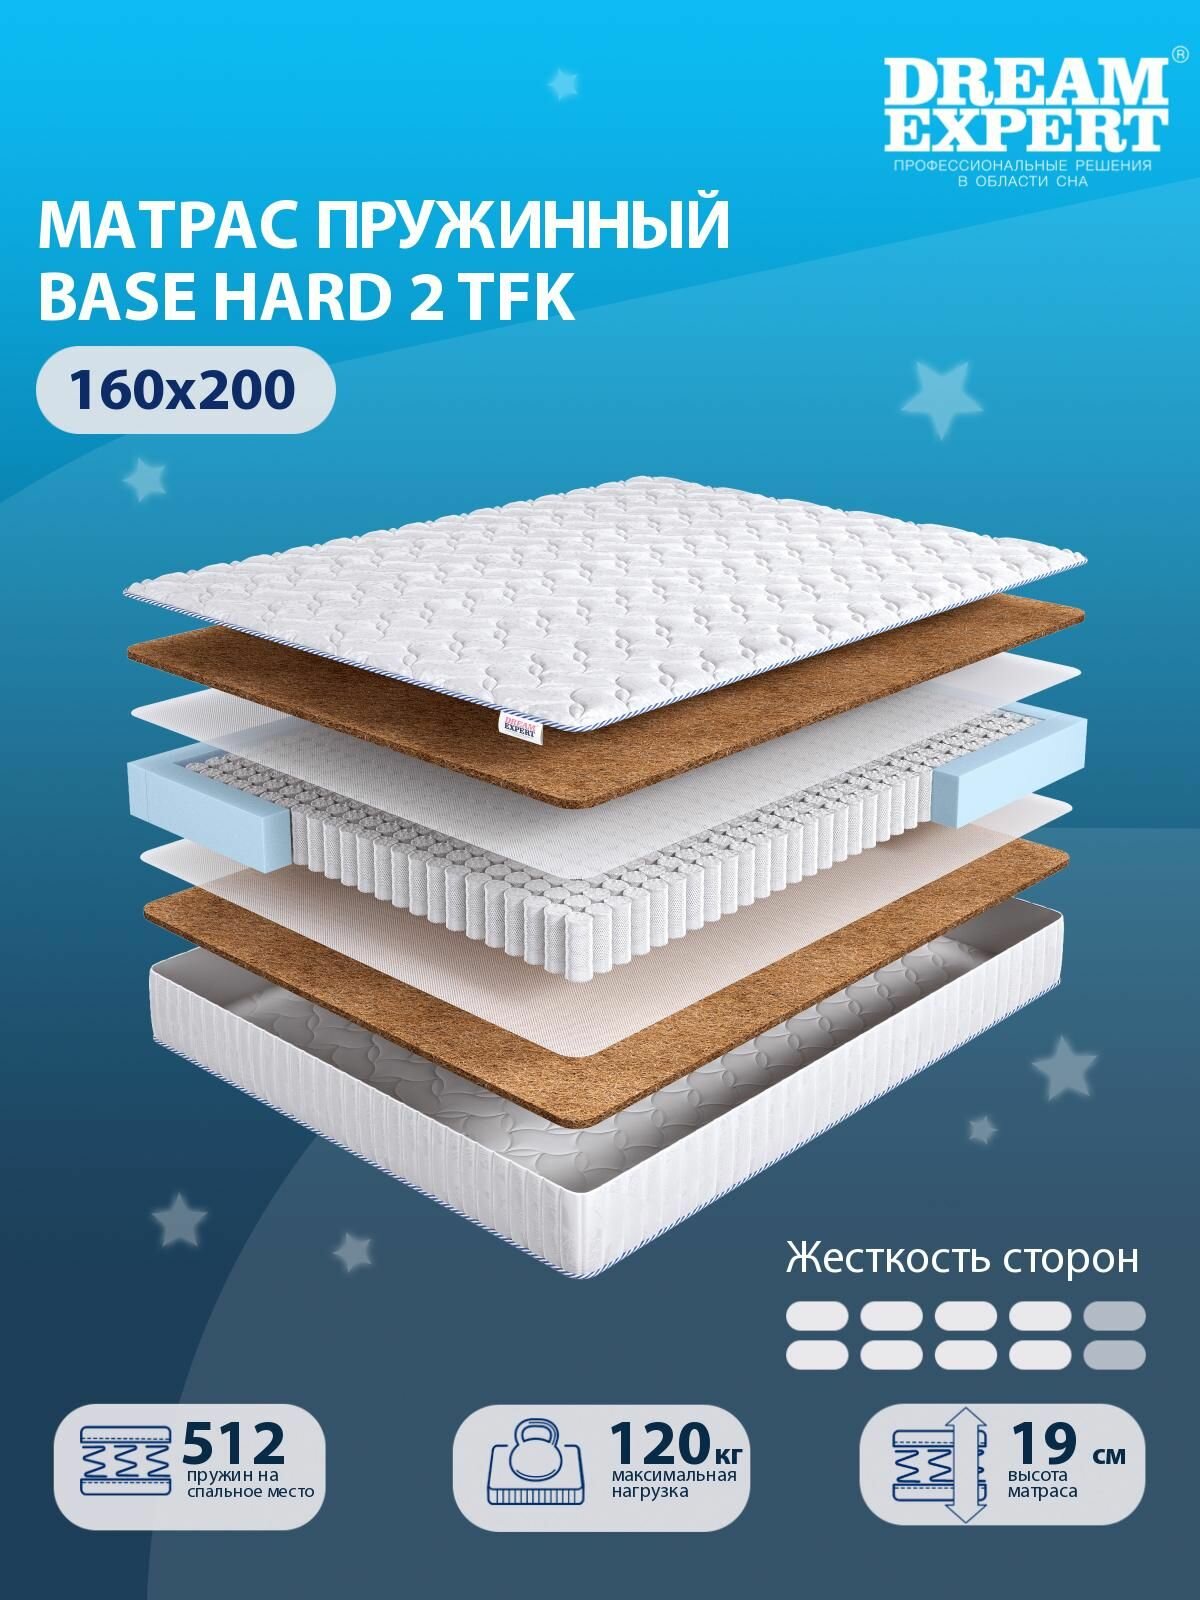 Матрас DreamExpert Base Hard 2 TFK выше средней жесткости, двуспальный, независимый пружинный блок, на кровать 160x200